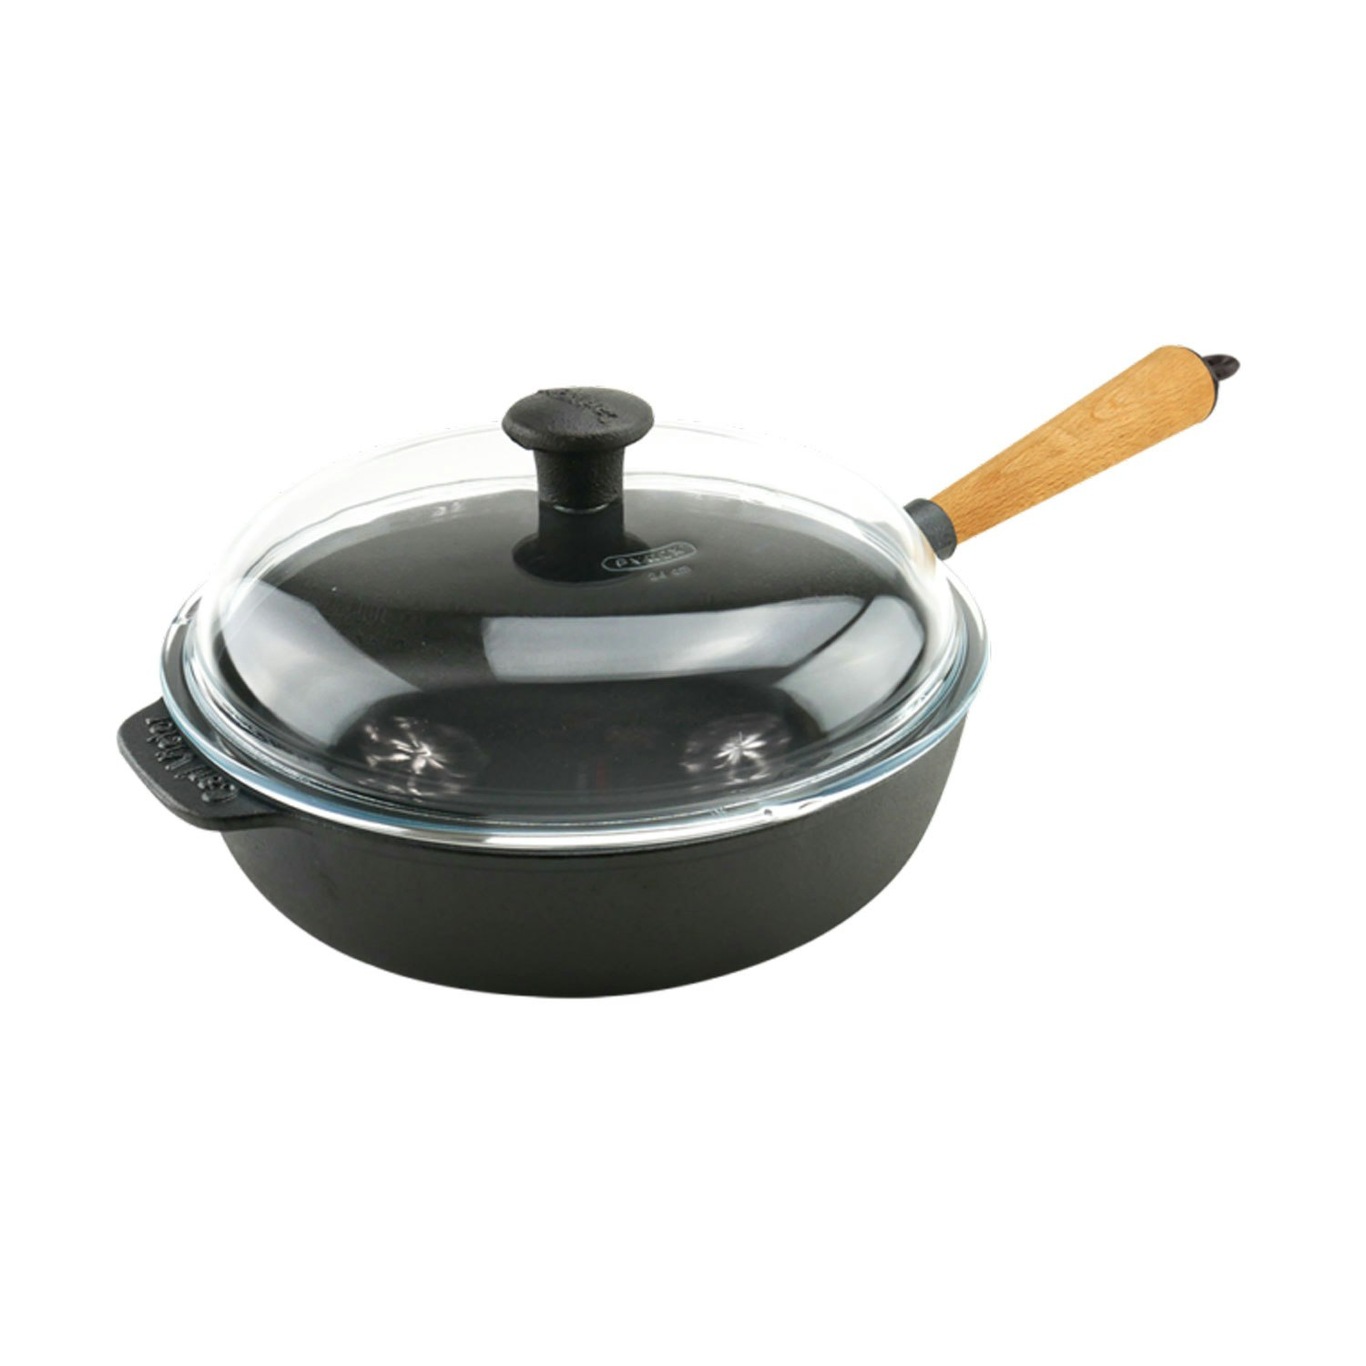 Sauté Pan With Lid 25 cm, Handle In Beech